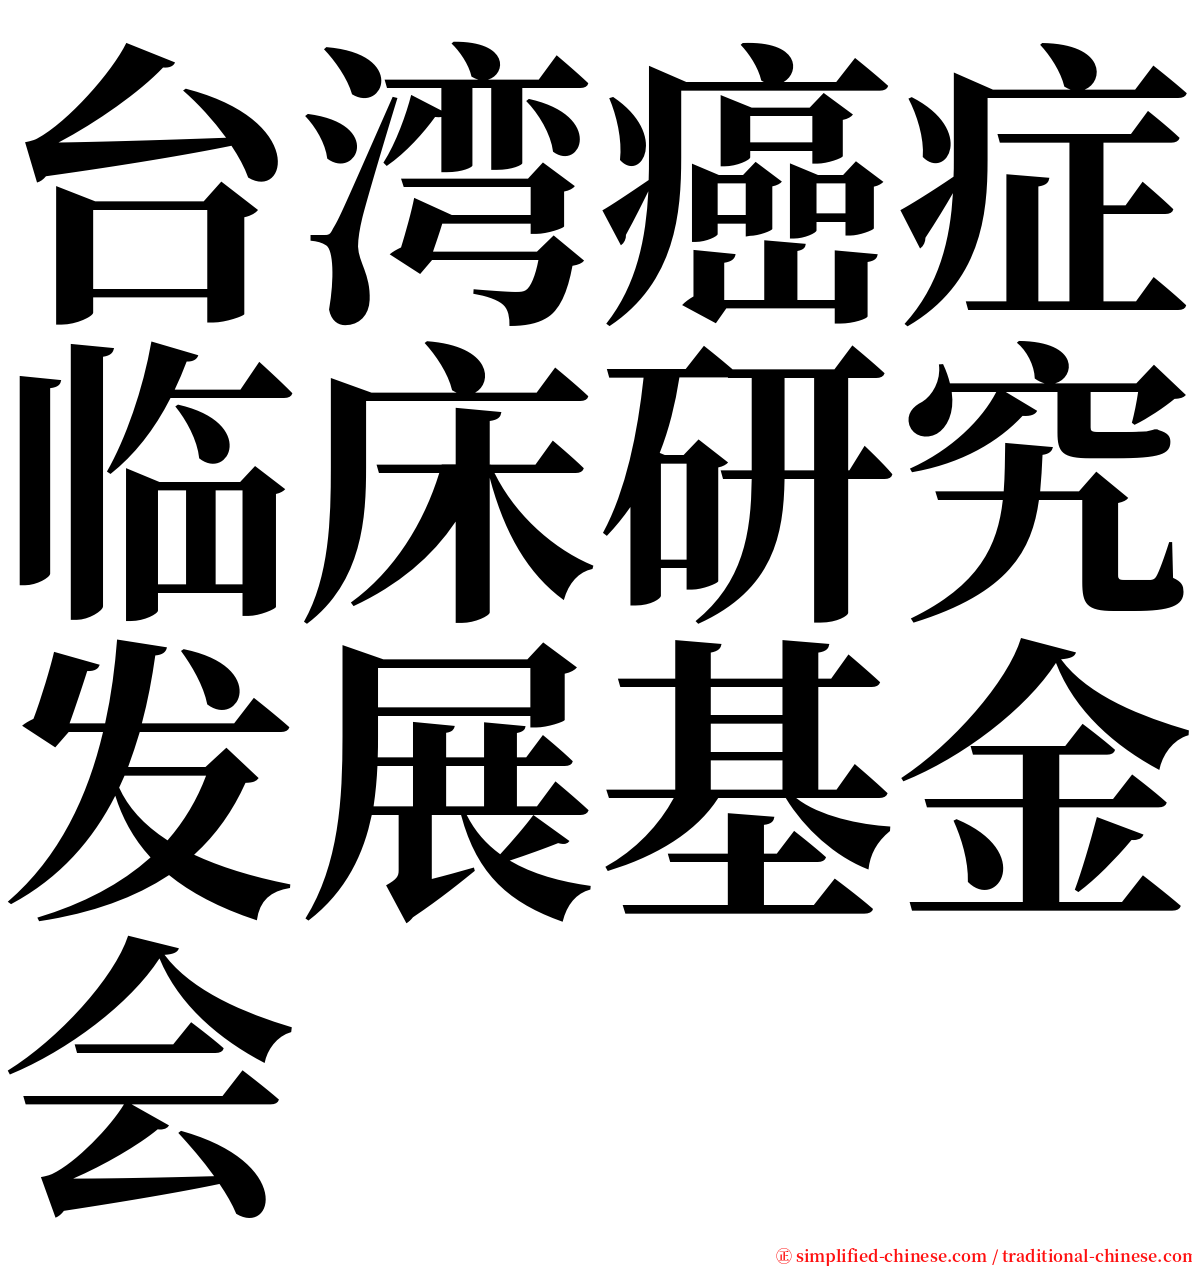 台湾癌症临床研究发展基金会 serif font